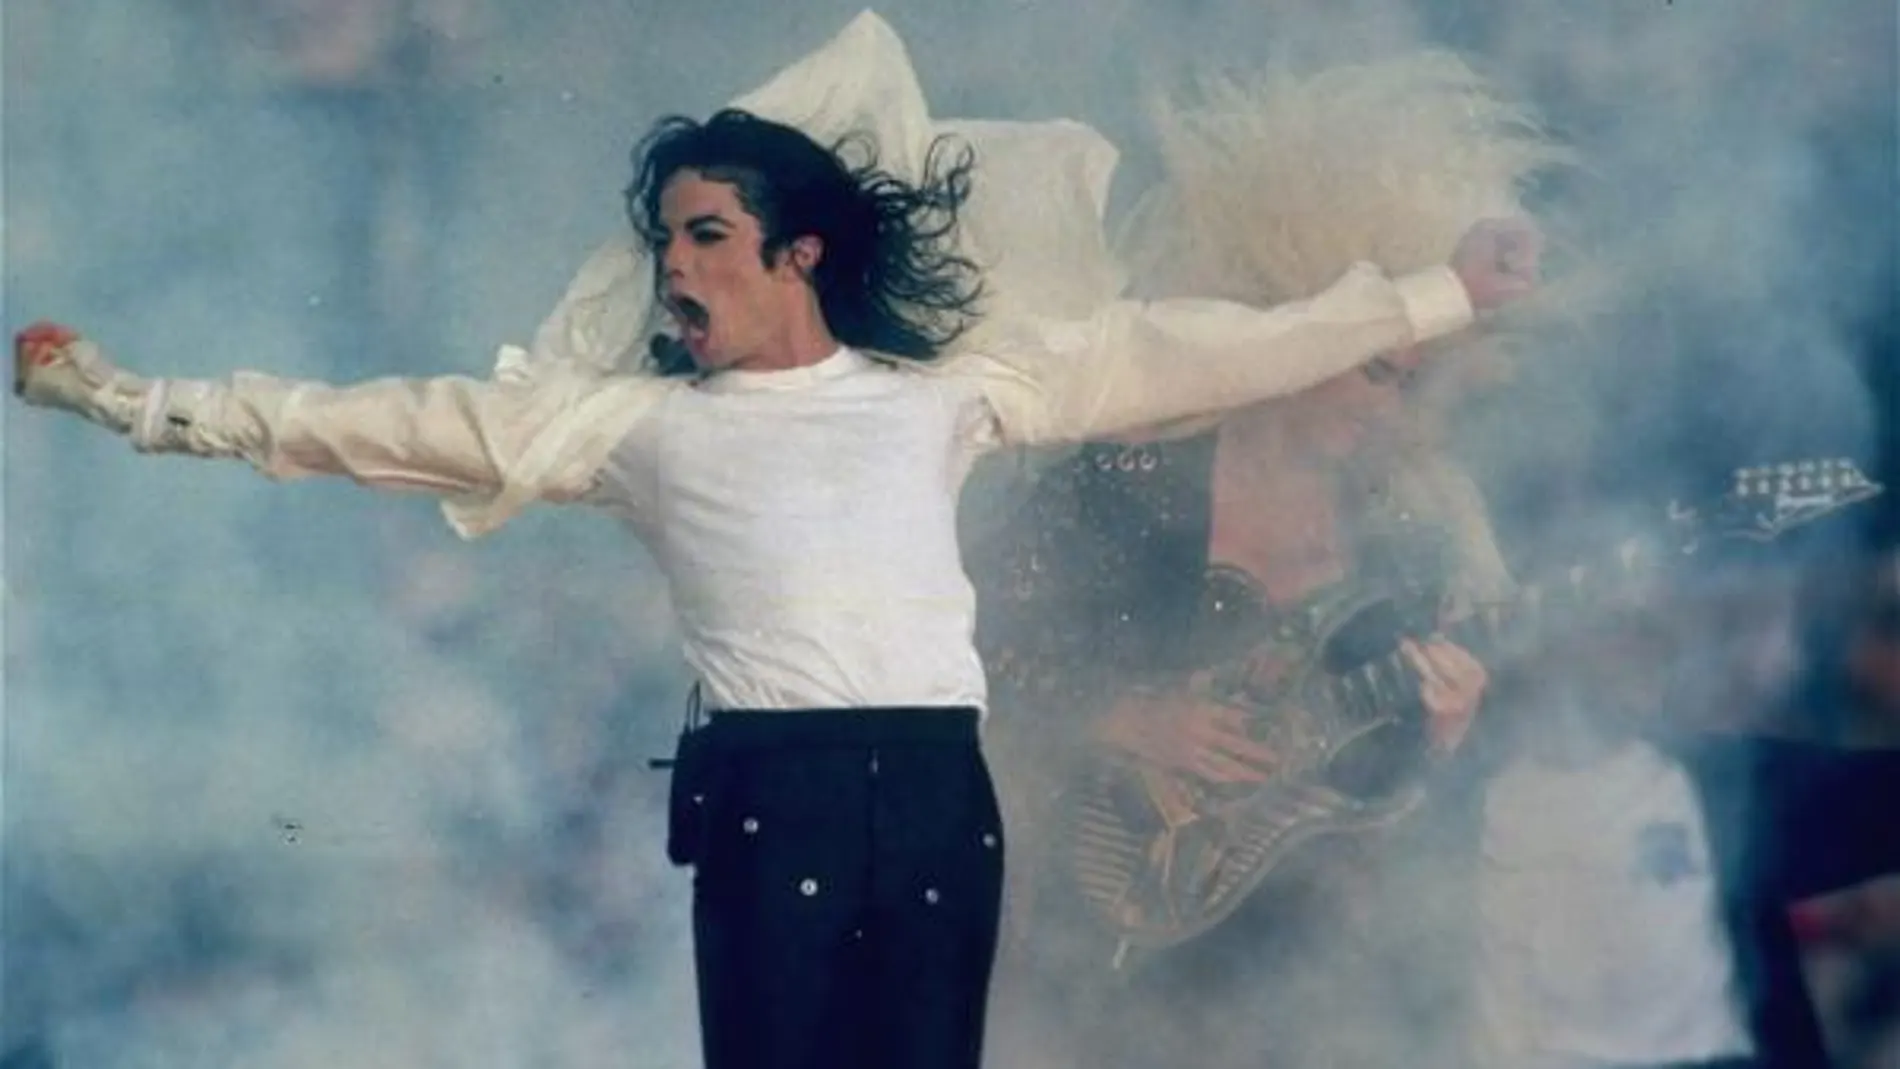 Se cumplen once años del fallecimiento de Michael Jackson